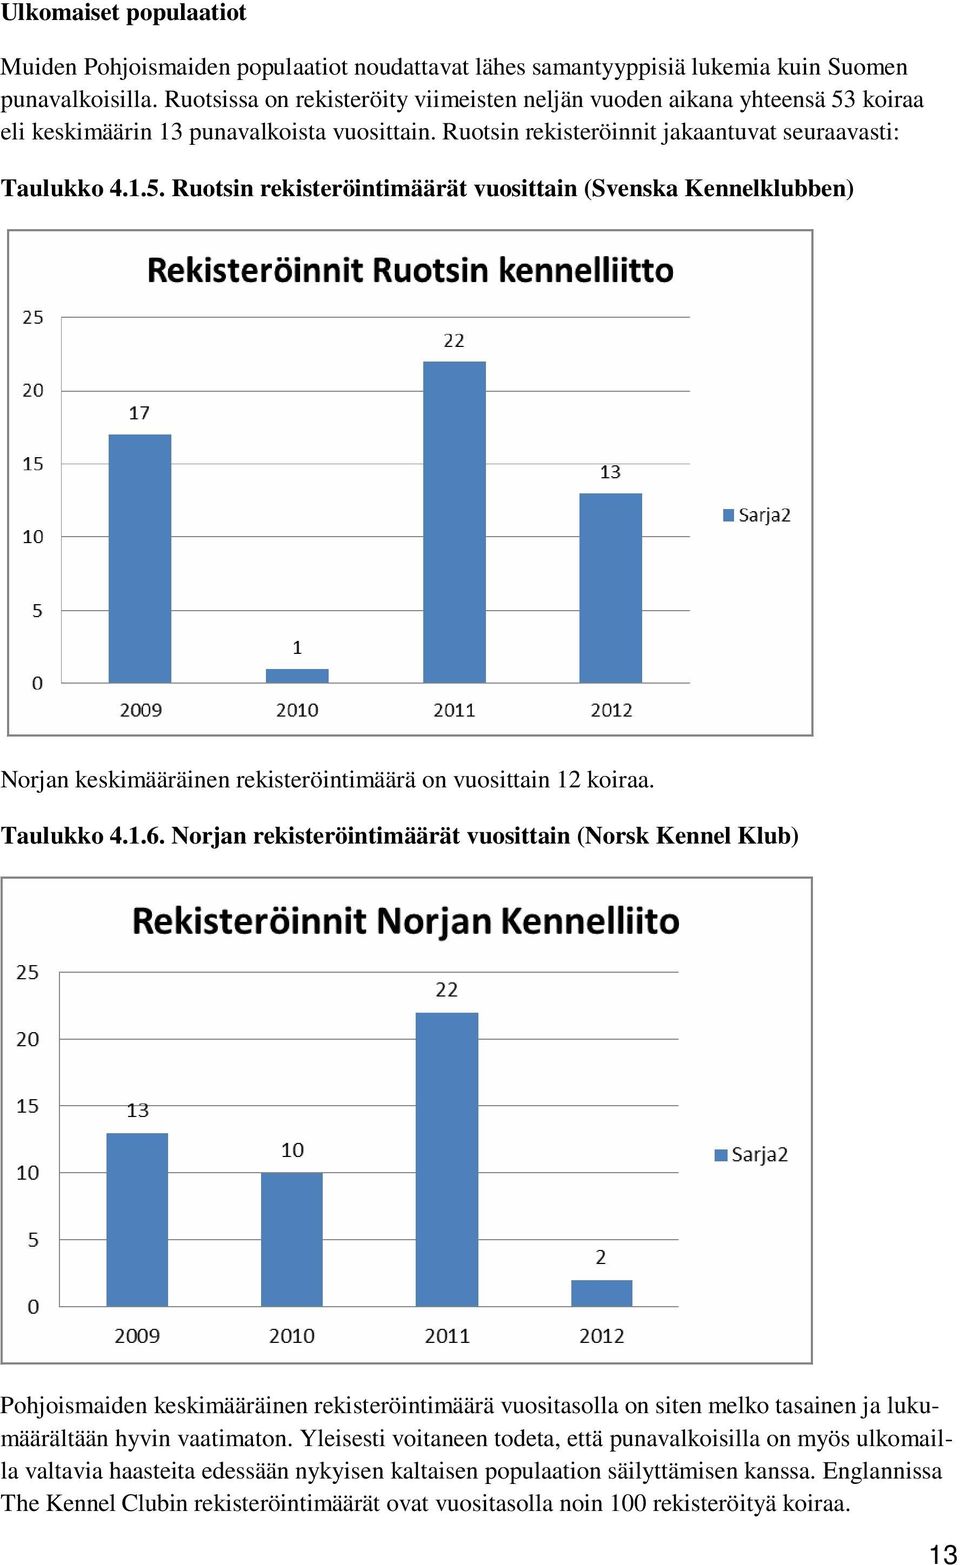 Taulukko 4.1.6. Norjan rekisteröintimäärät vuosittain (Norsk Kennel Klub) Pohjoismaiden keskimääräinen rekisteröintimäärä vuositasolla on siten melko tasainen ja lukumäärältään hyvin vaatimaton.